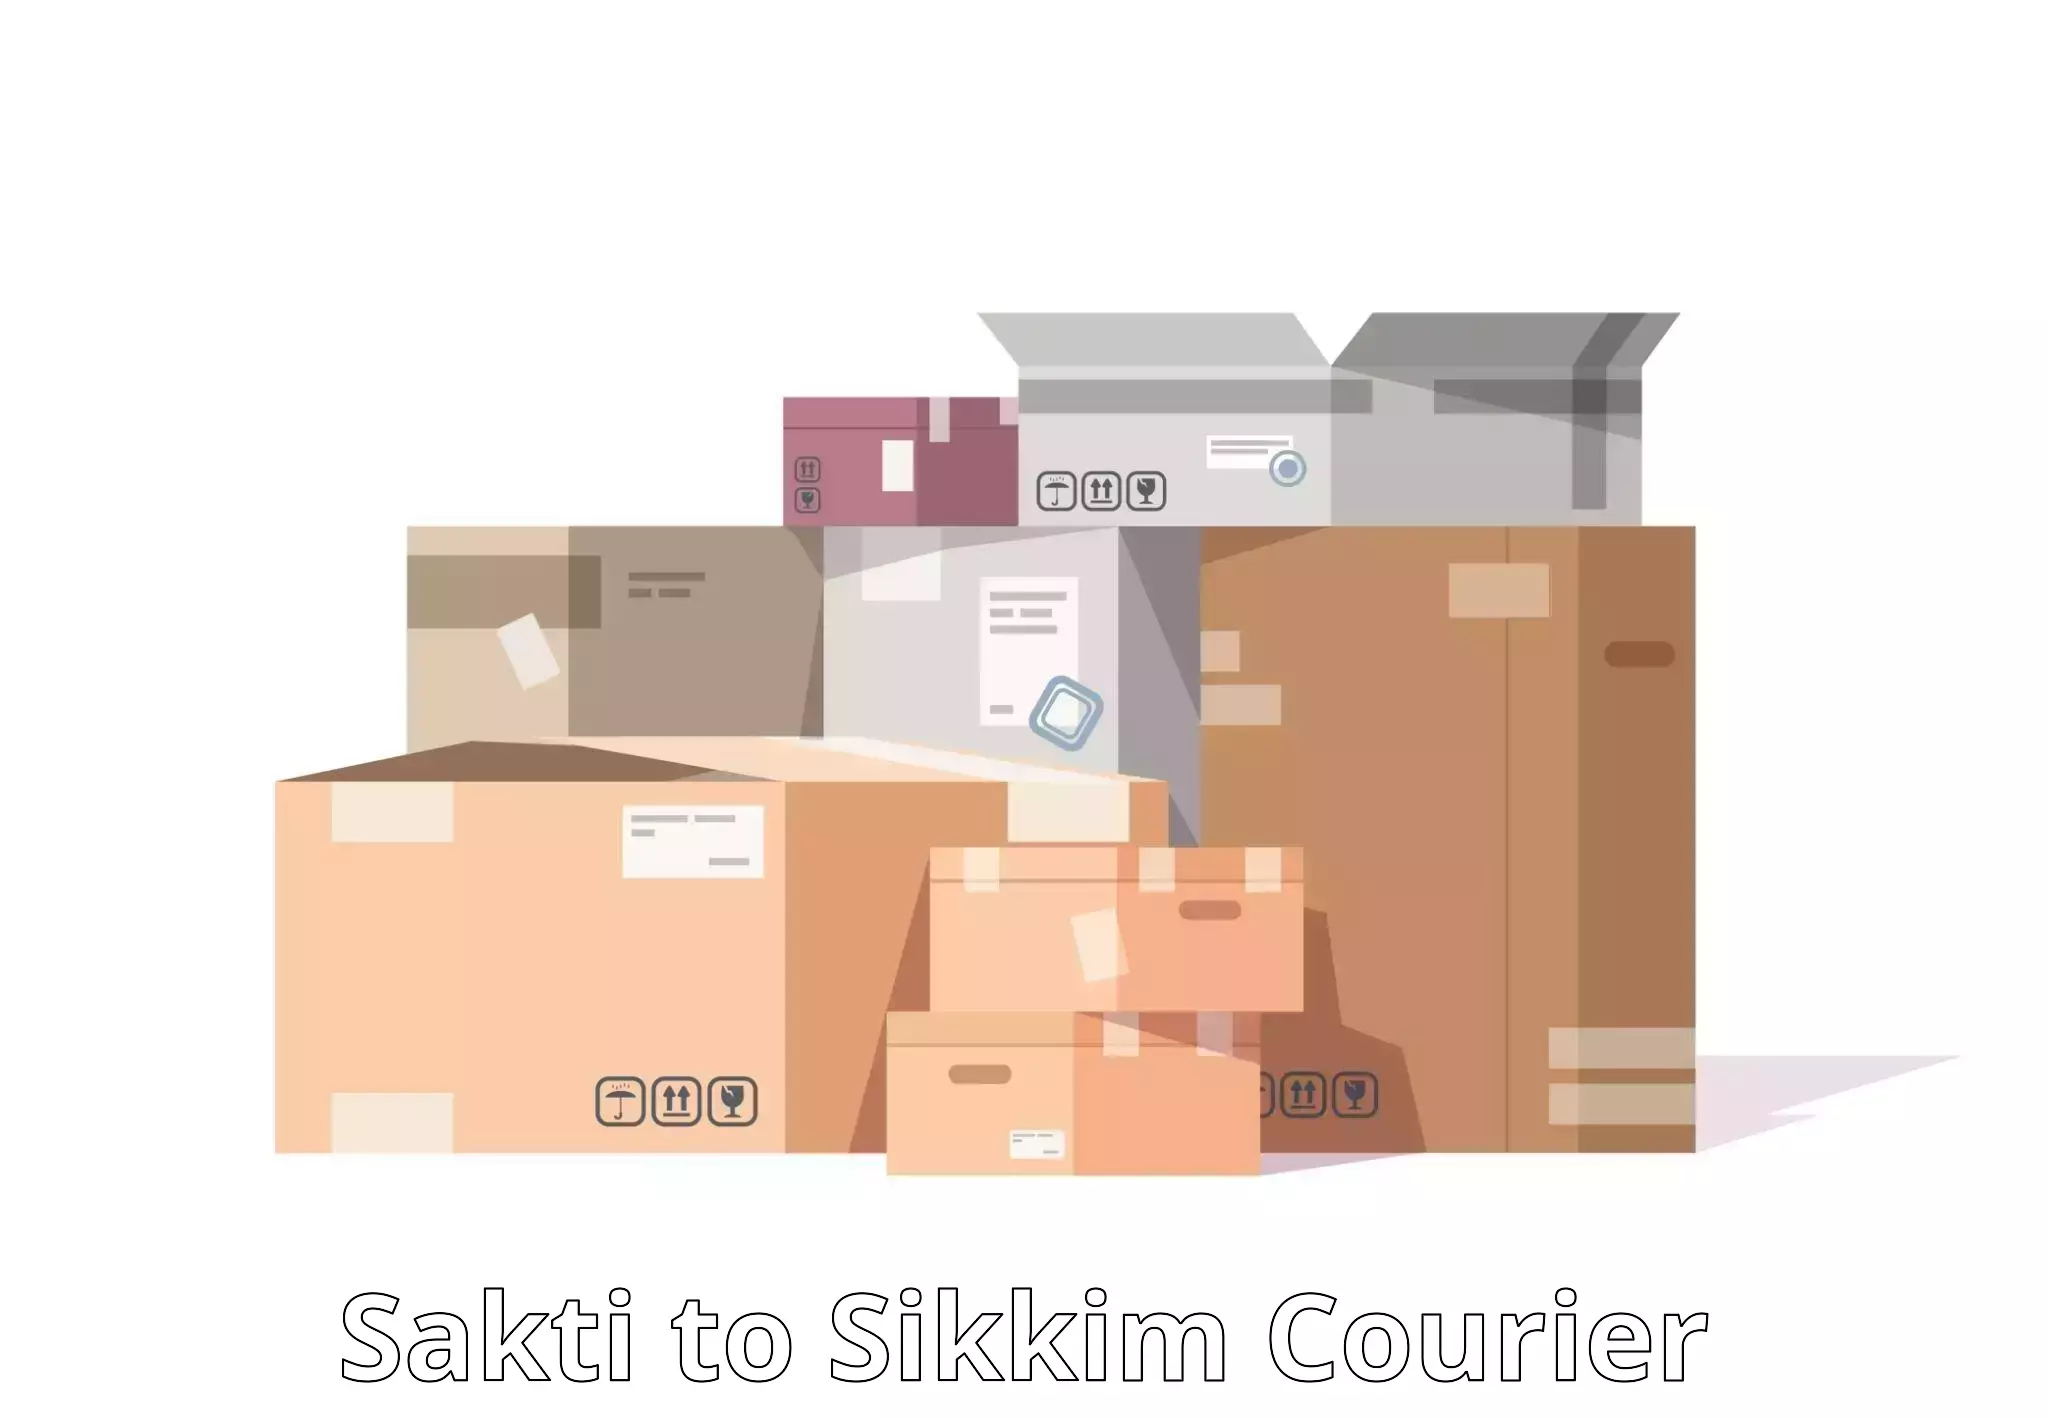 Large-scale shipping solutions Sakti to Mangan